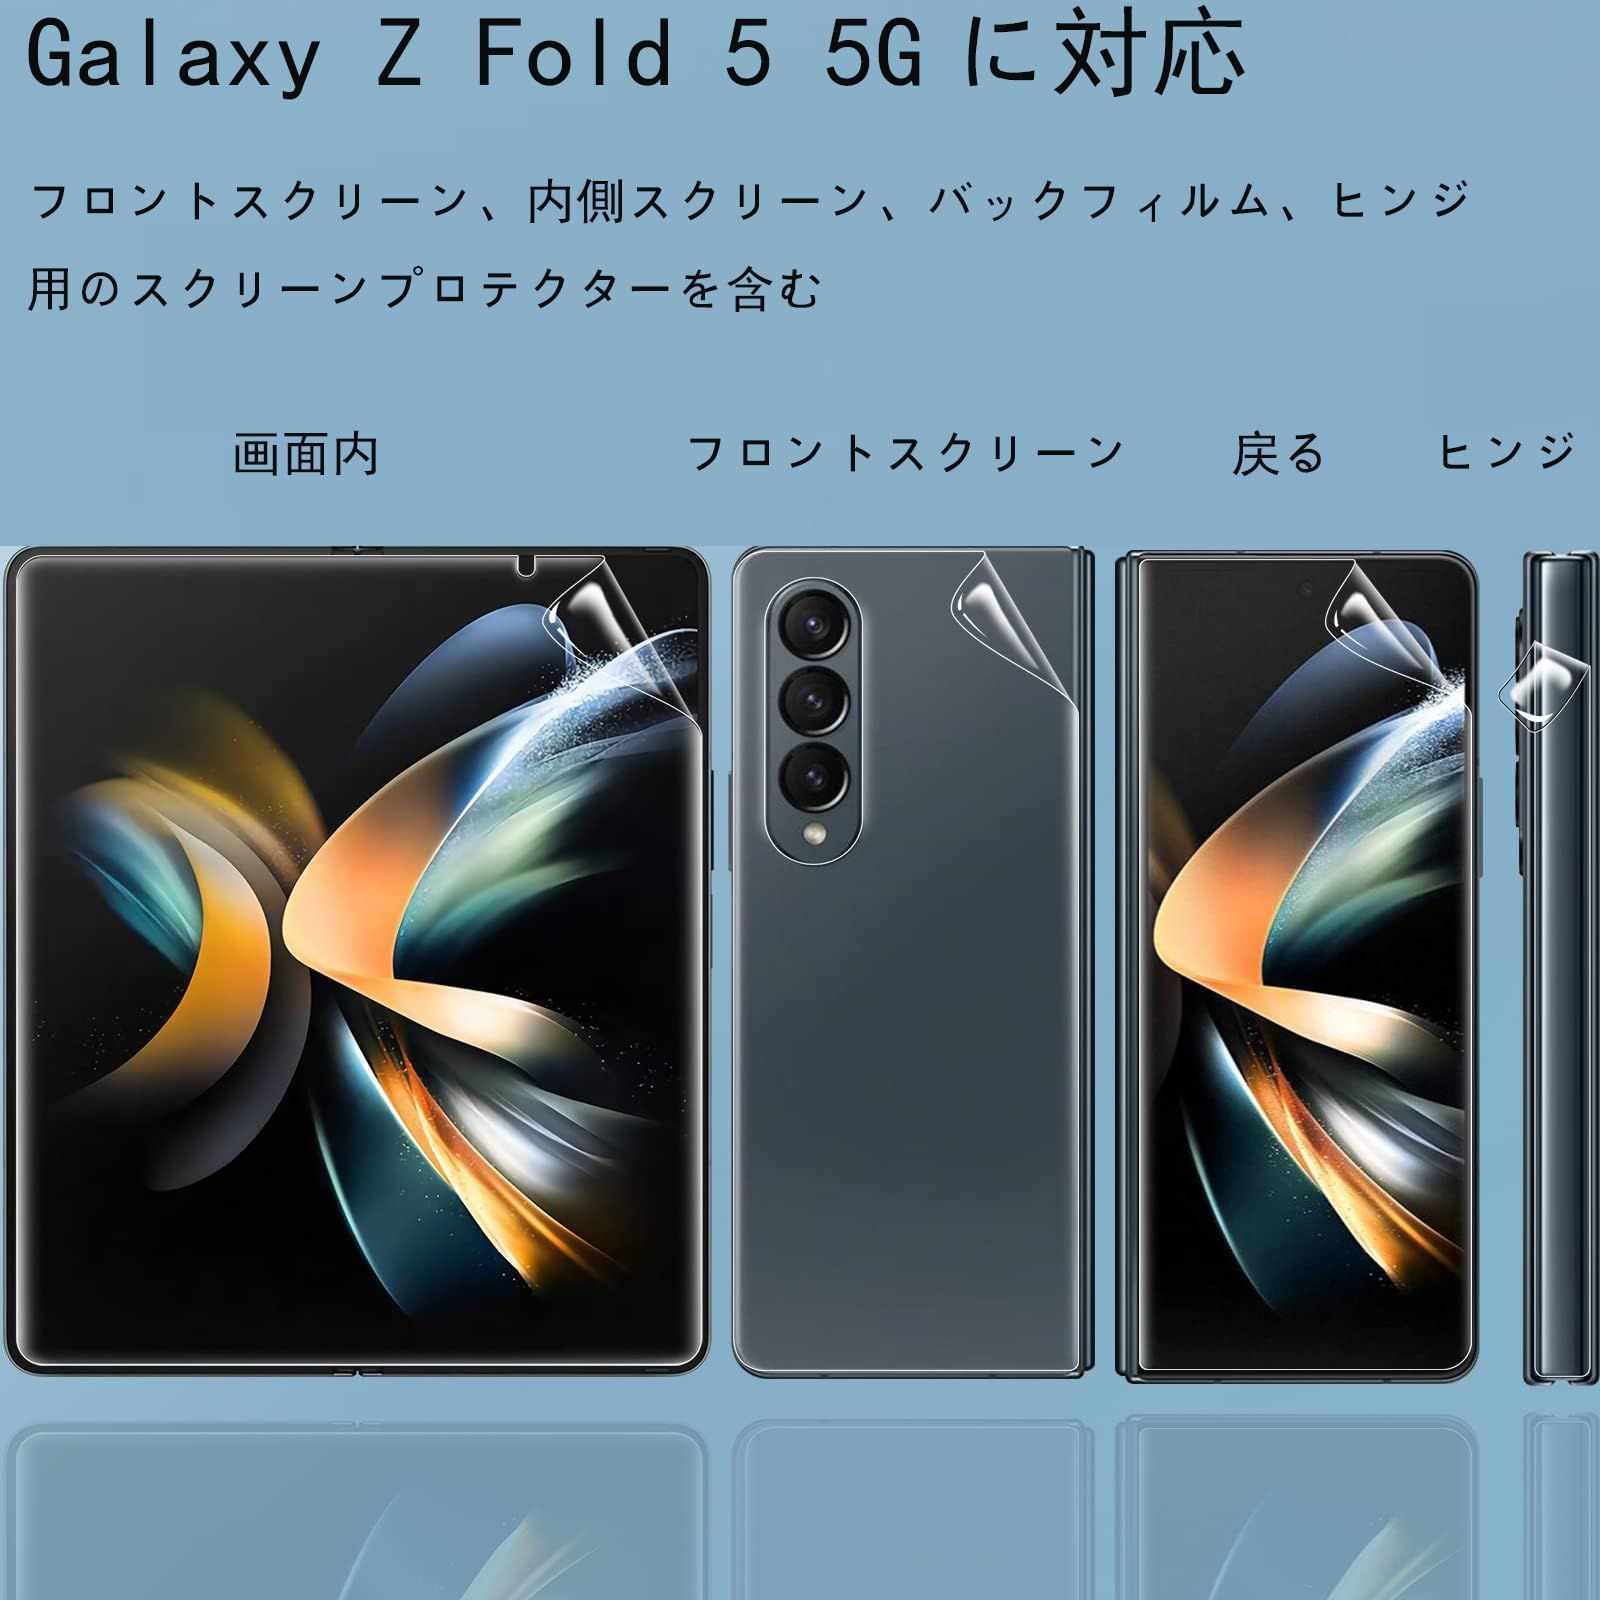 QAZWERT【4 + 4枚セット】Galaxy Z Fold5 フィルム 全面保護 Samsung ギャラクシー zフォールド 5 SCG22 SC-55D 自動修復 キズ防止 指紋認証対応 超高敏感度 柔らかい ケースに干渉せず 超薄型 気泡な